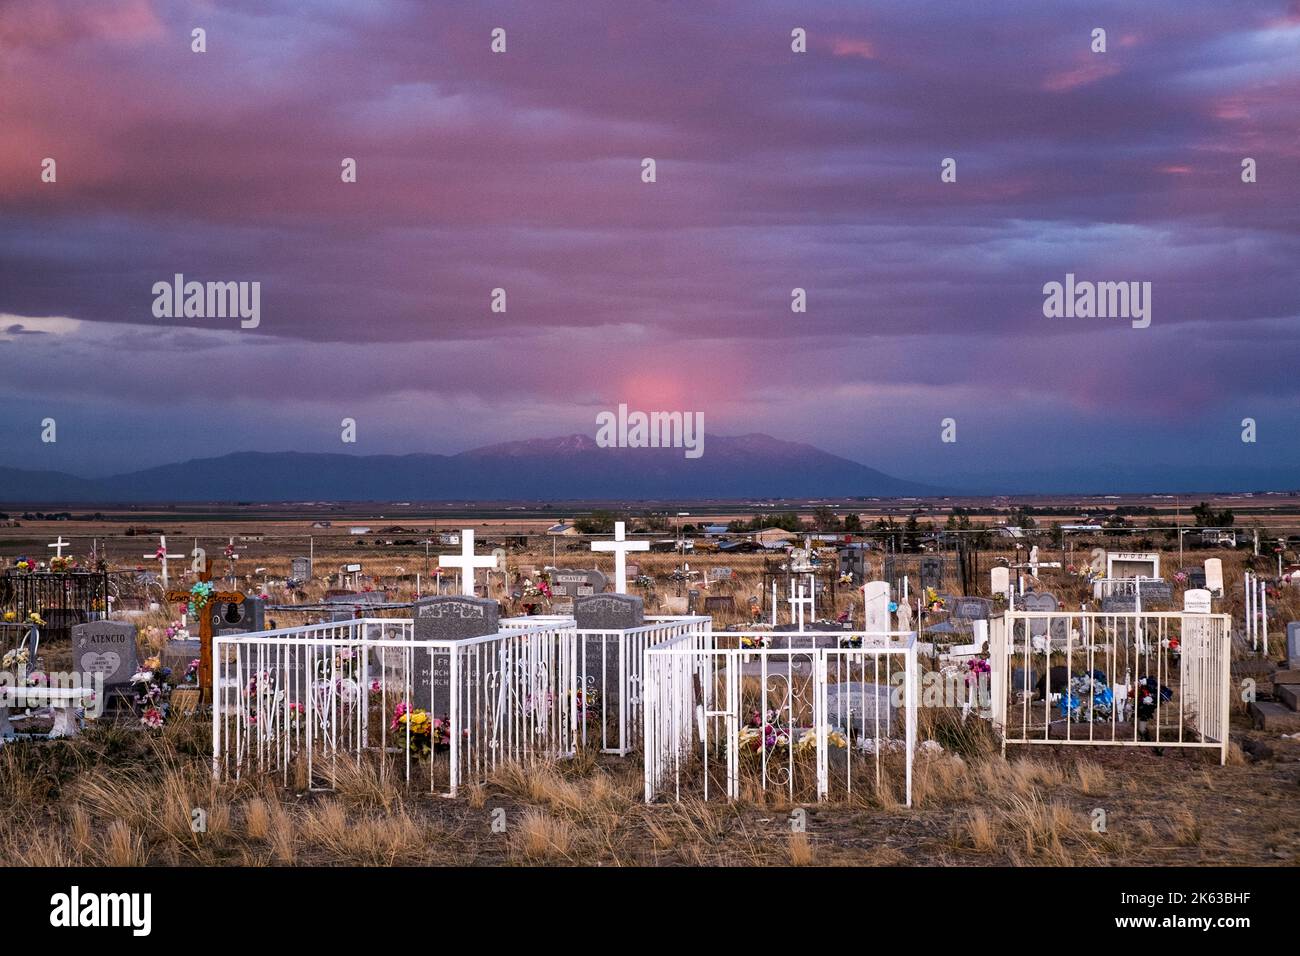 La Garita, Colorado, cemetery at sundown Stock Photo